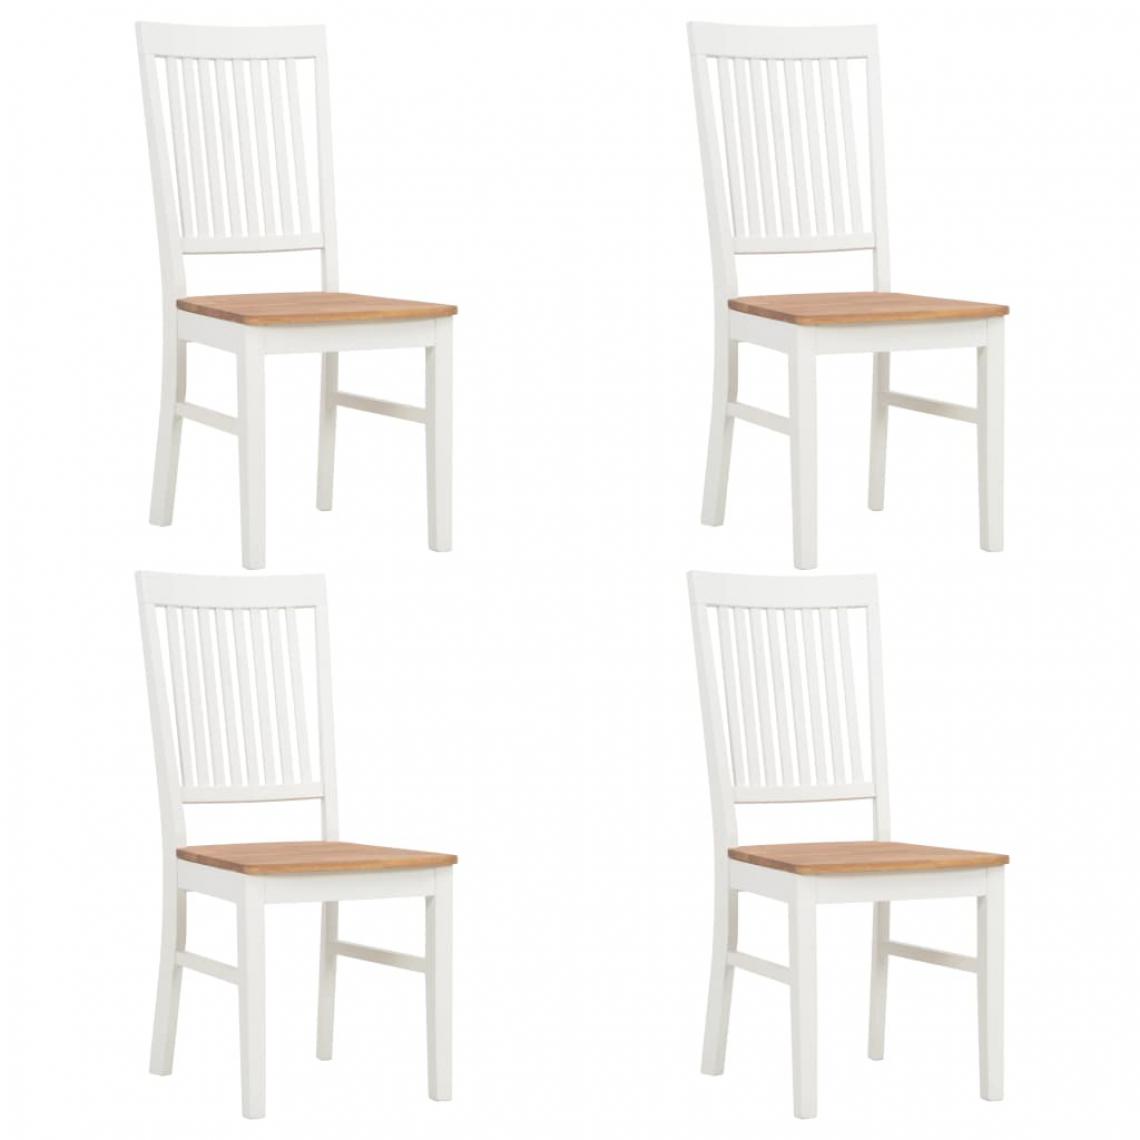 Icaverne - Superbe Fauteuils et chaises edition Katmandou Chaises de salle à manger 4 pcs Blanc Bois de chêne solide - Chaises